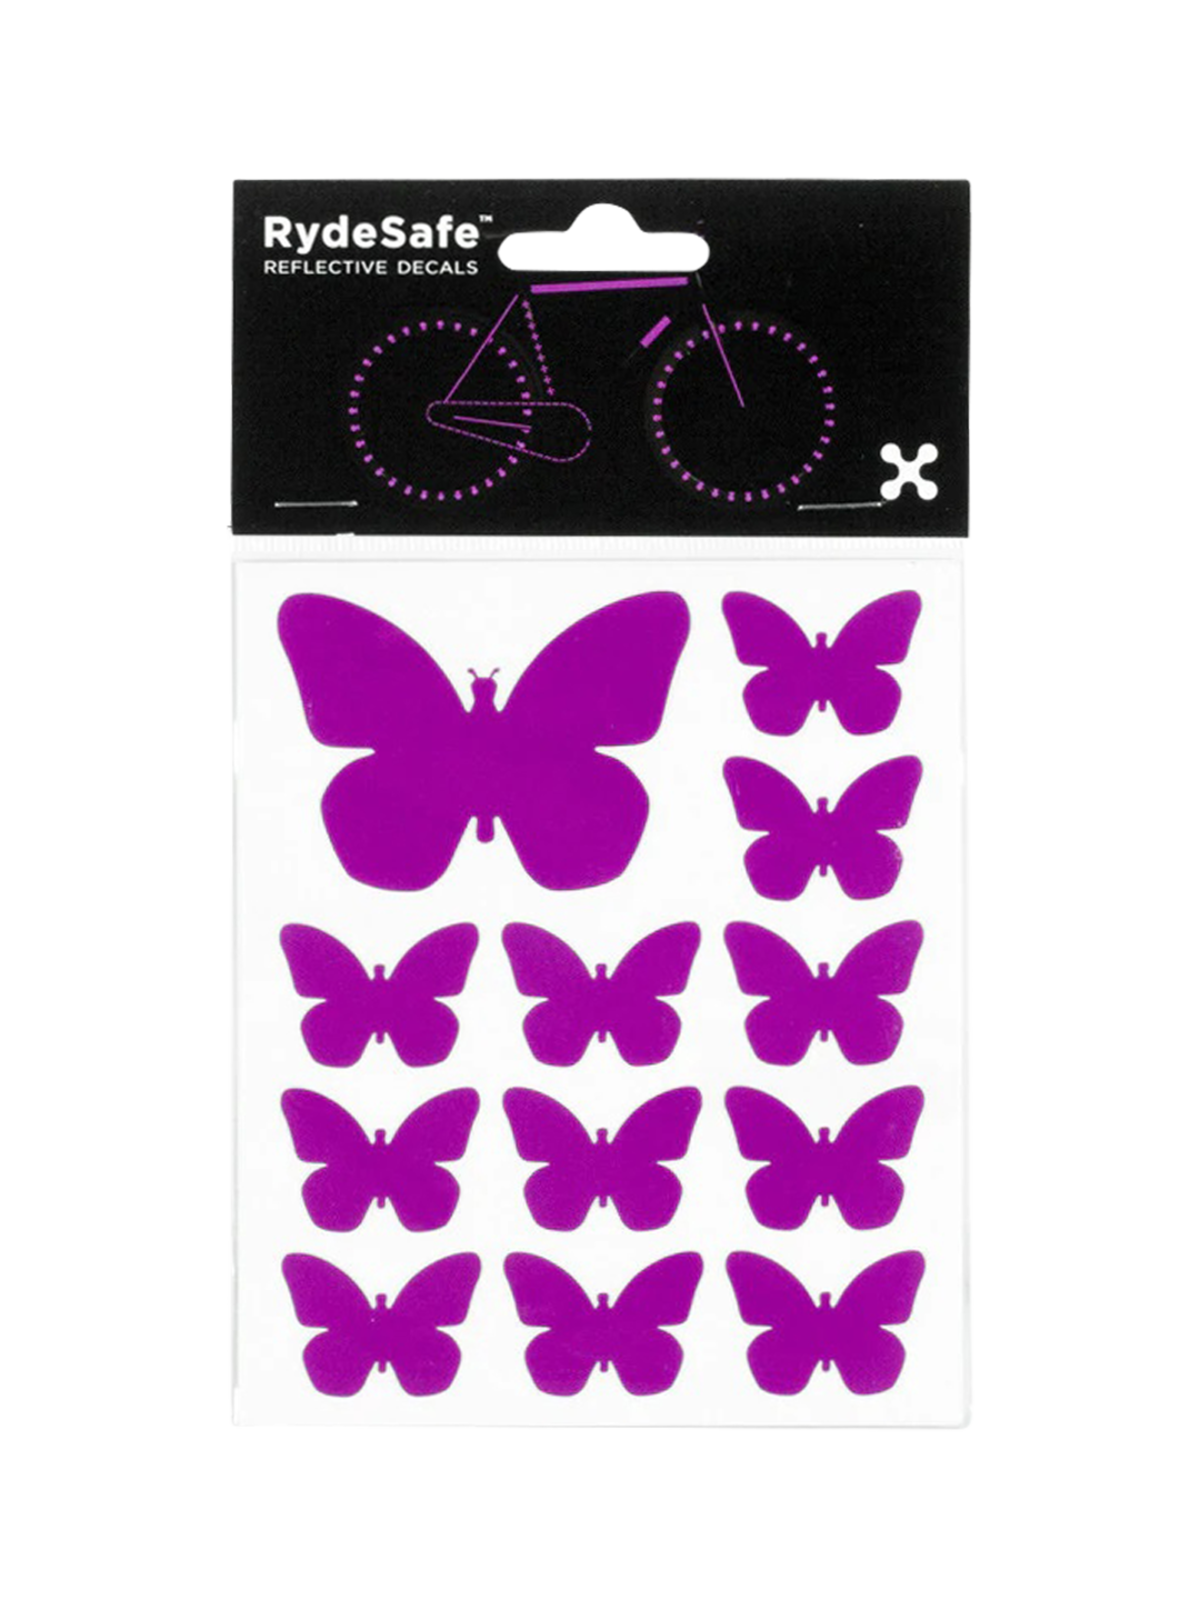 Les stickers réfléchissants RydeSafe